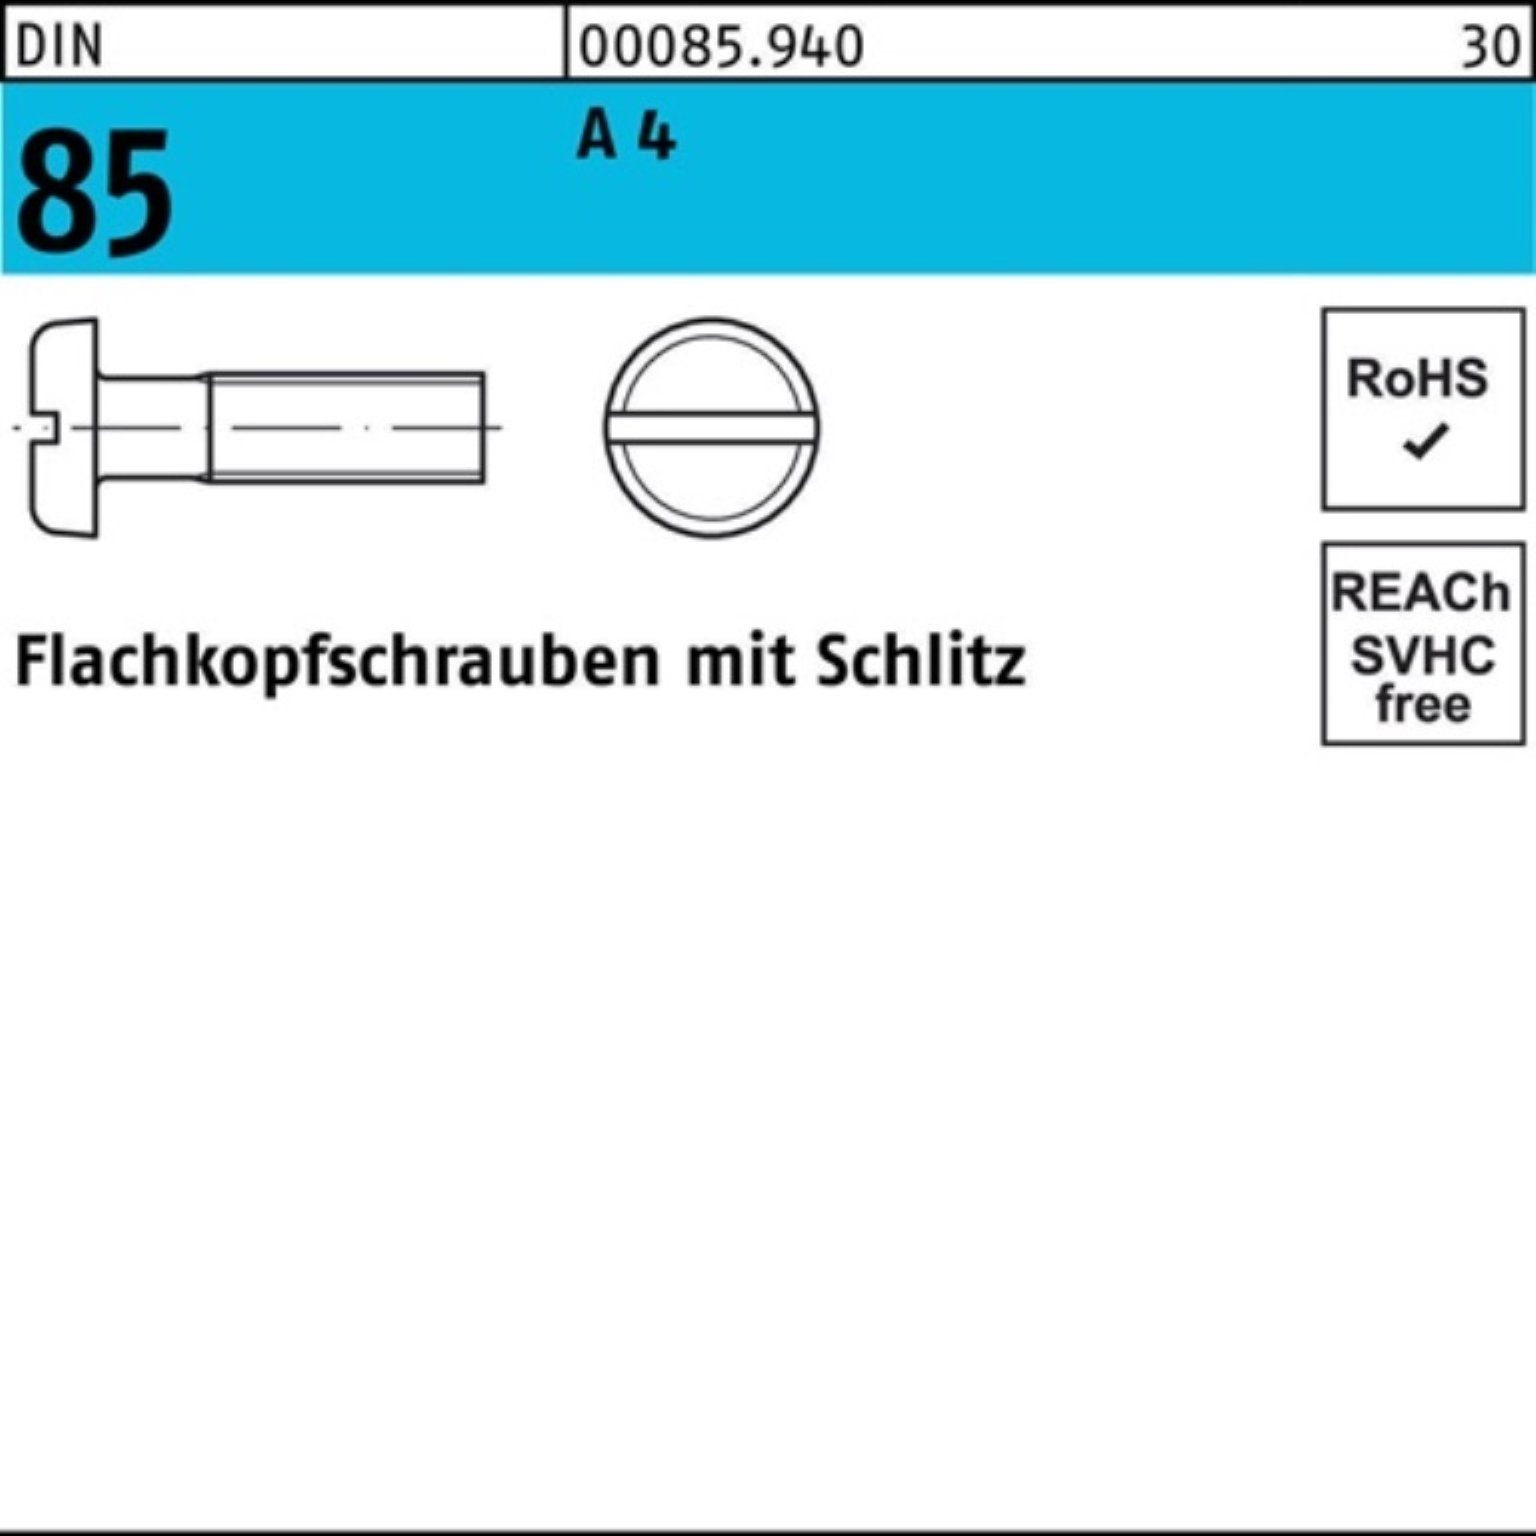 Pack St 4 85/ISO Schlitz 35 Reyher Flachkopfschraube A 1580 100 DIN M4x Schraube 100er